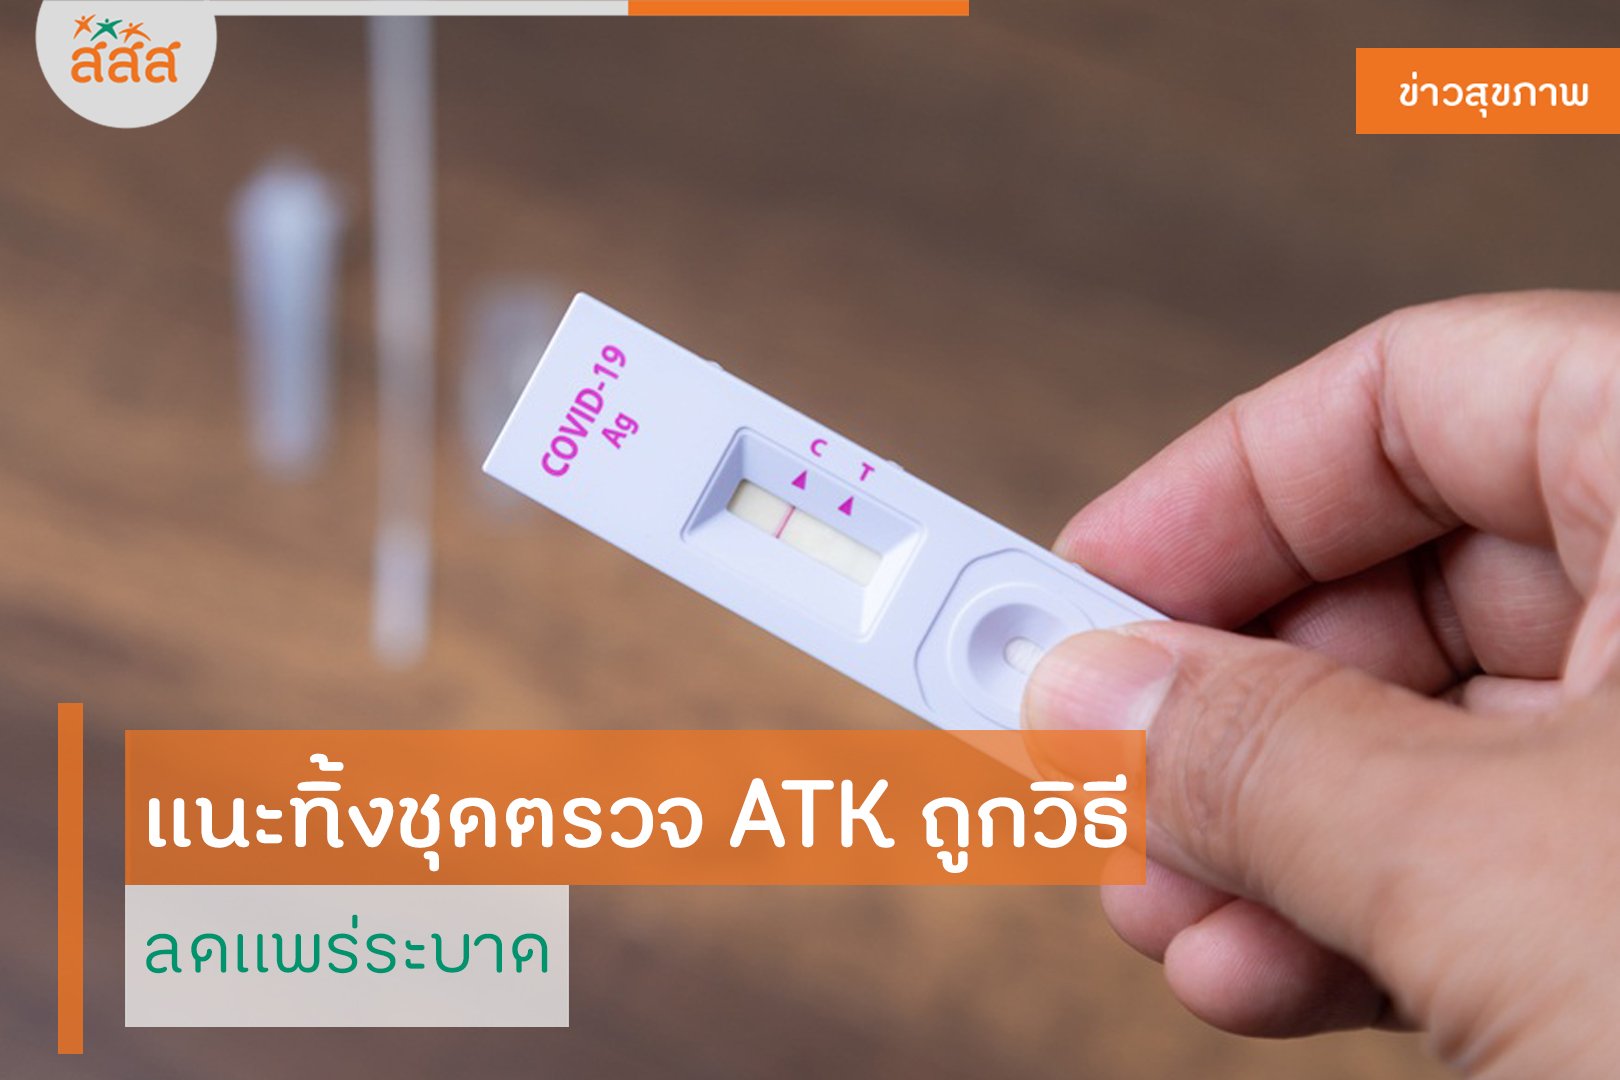 แนะทิ้งชุดตรวจ ATK ถูกวิธี ช่วยลดแพร่ระบาด thaihealth